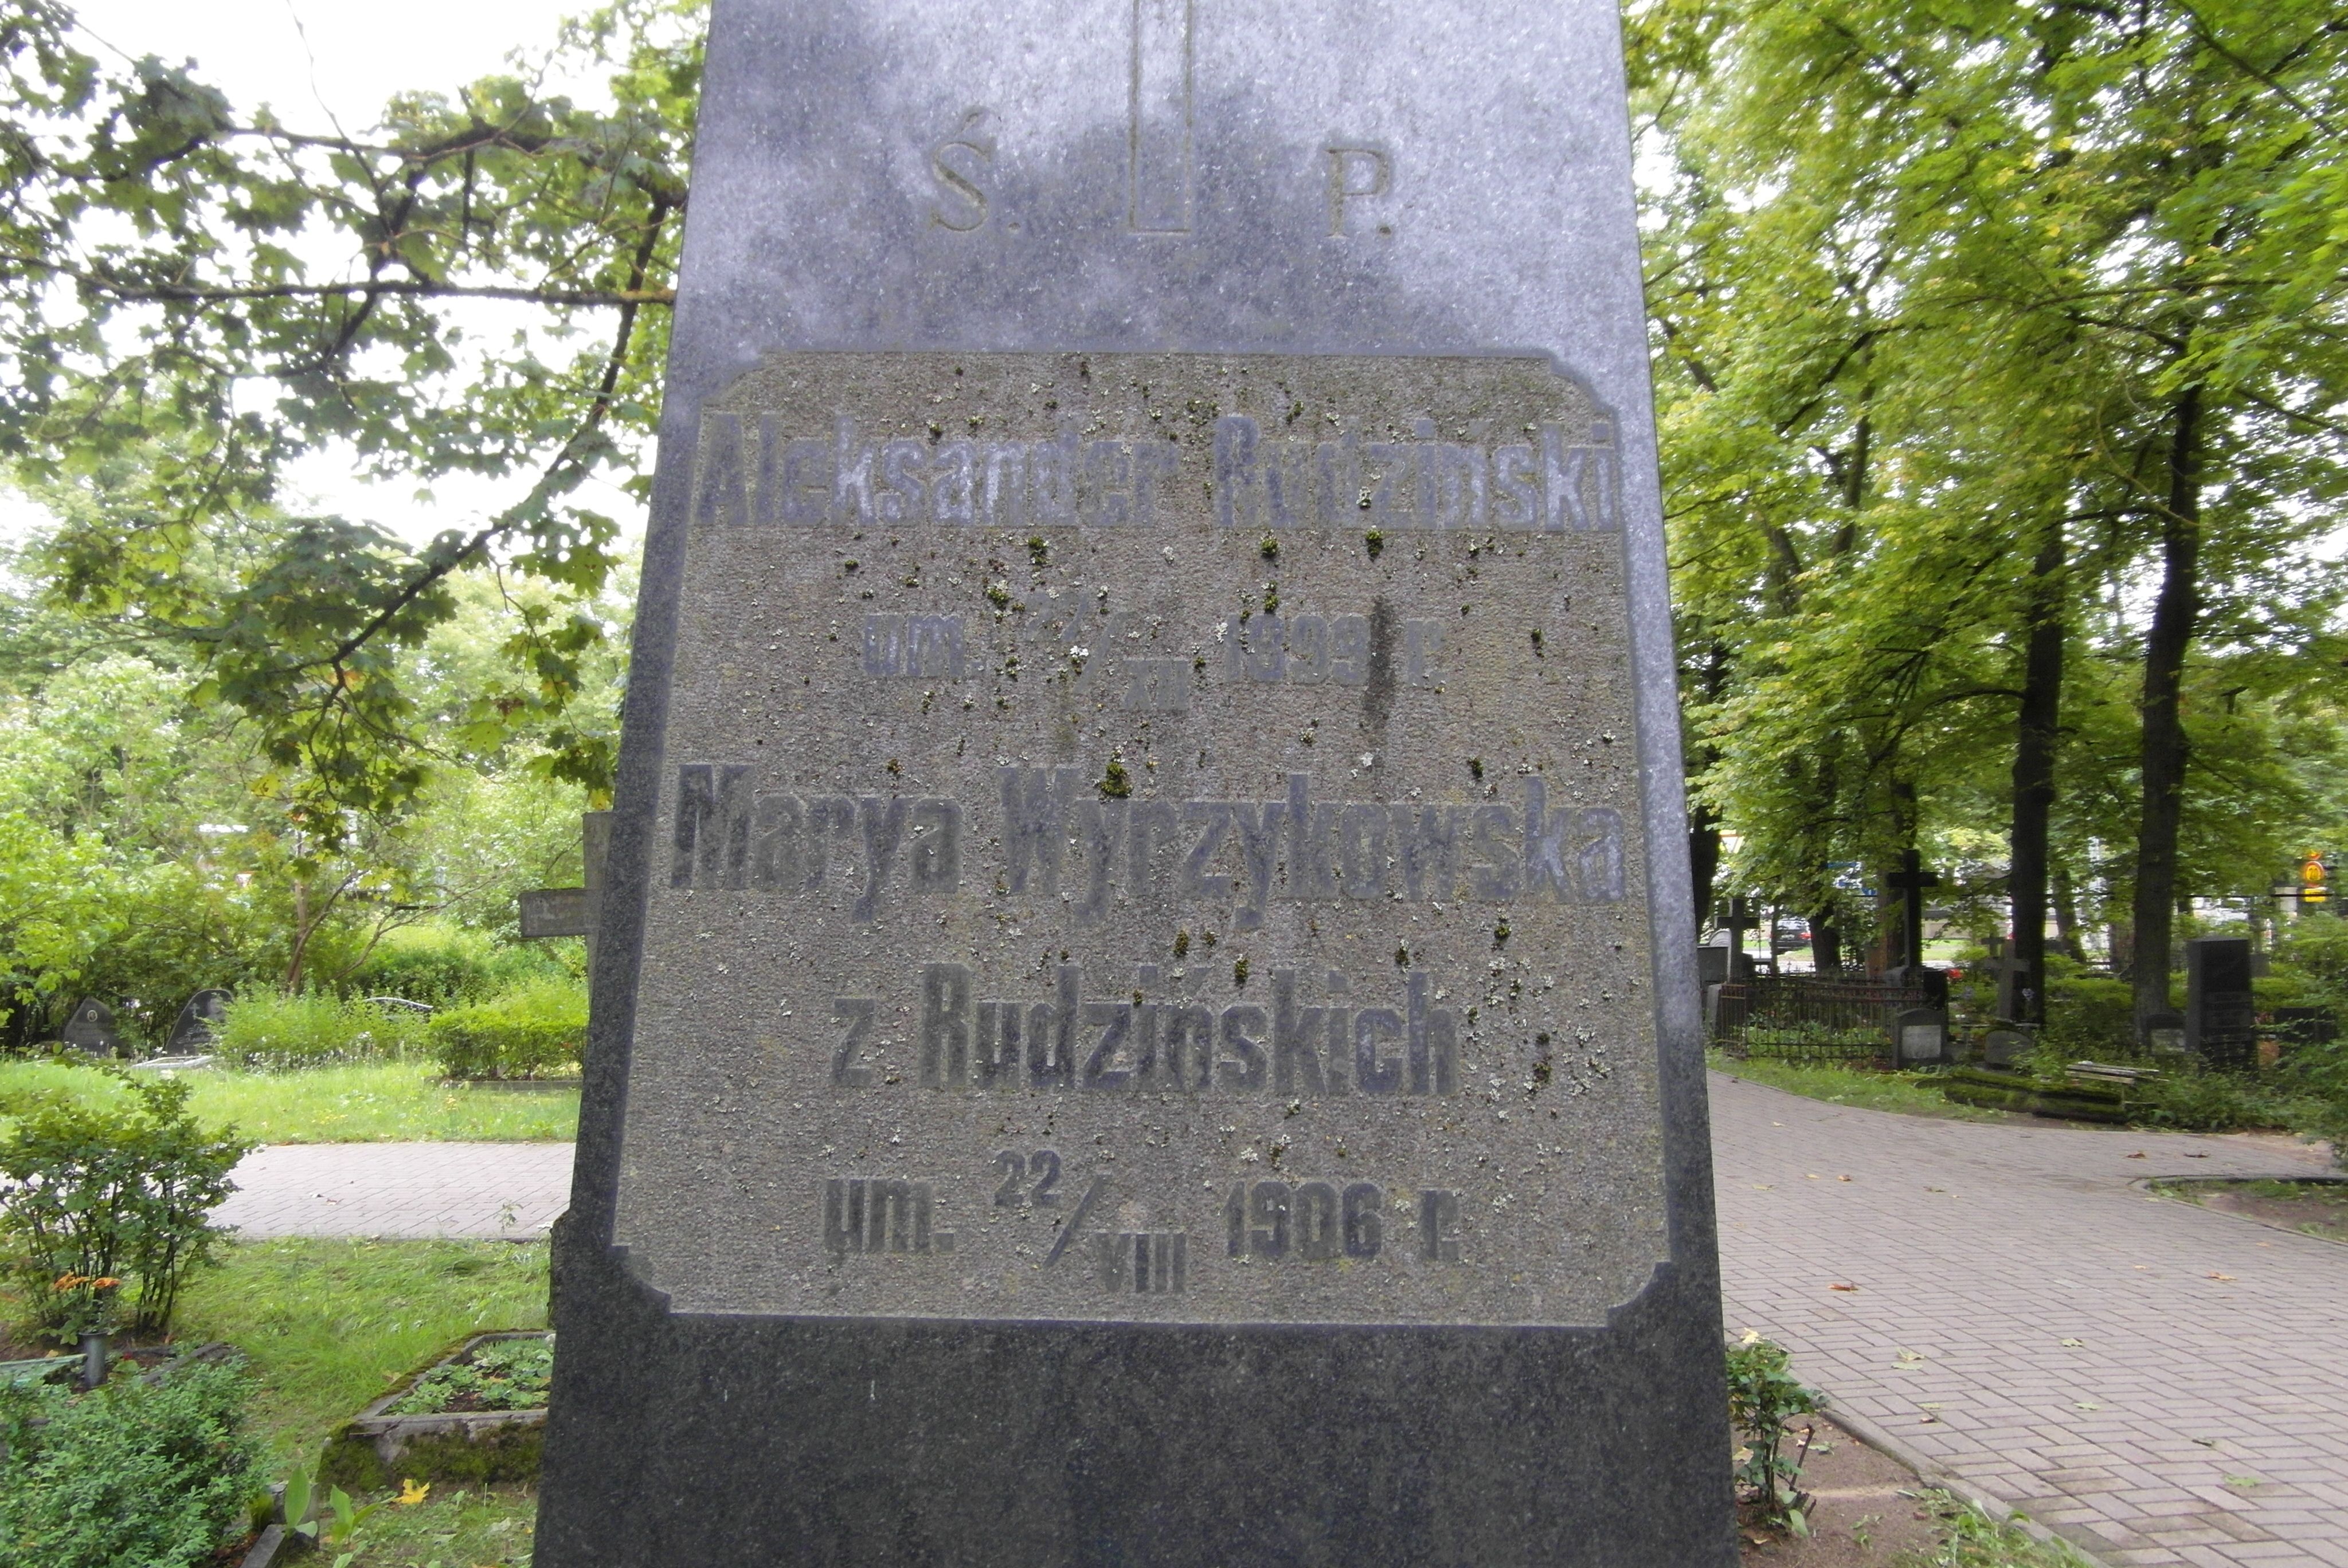 Napis z nagrobka Aleksandra Rudzińskiego, Marya Wyrzykowska, cmentarz św. Michała w Rydze, stan z 2021 r.